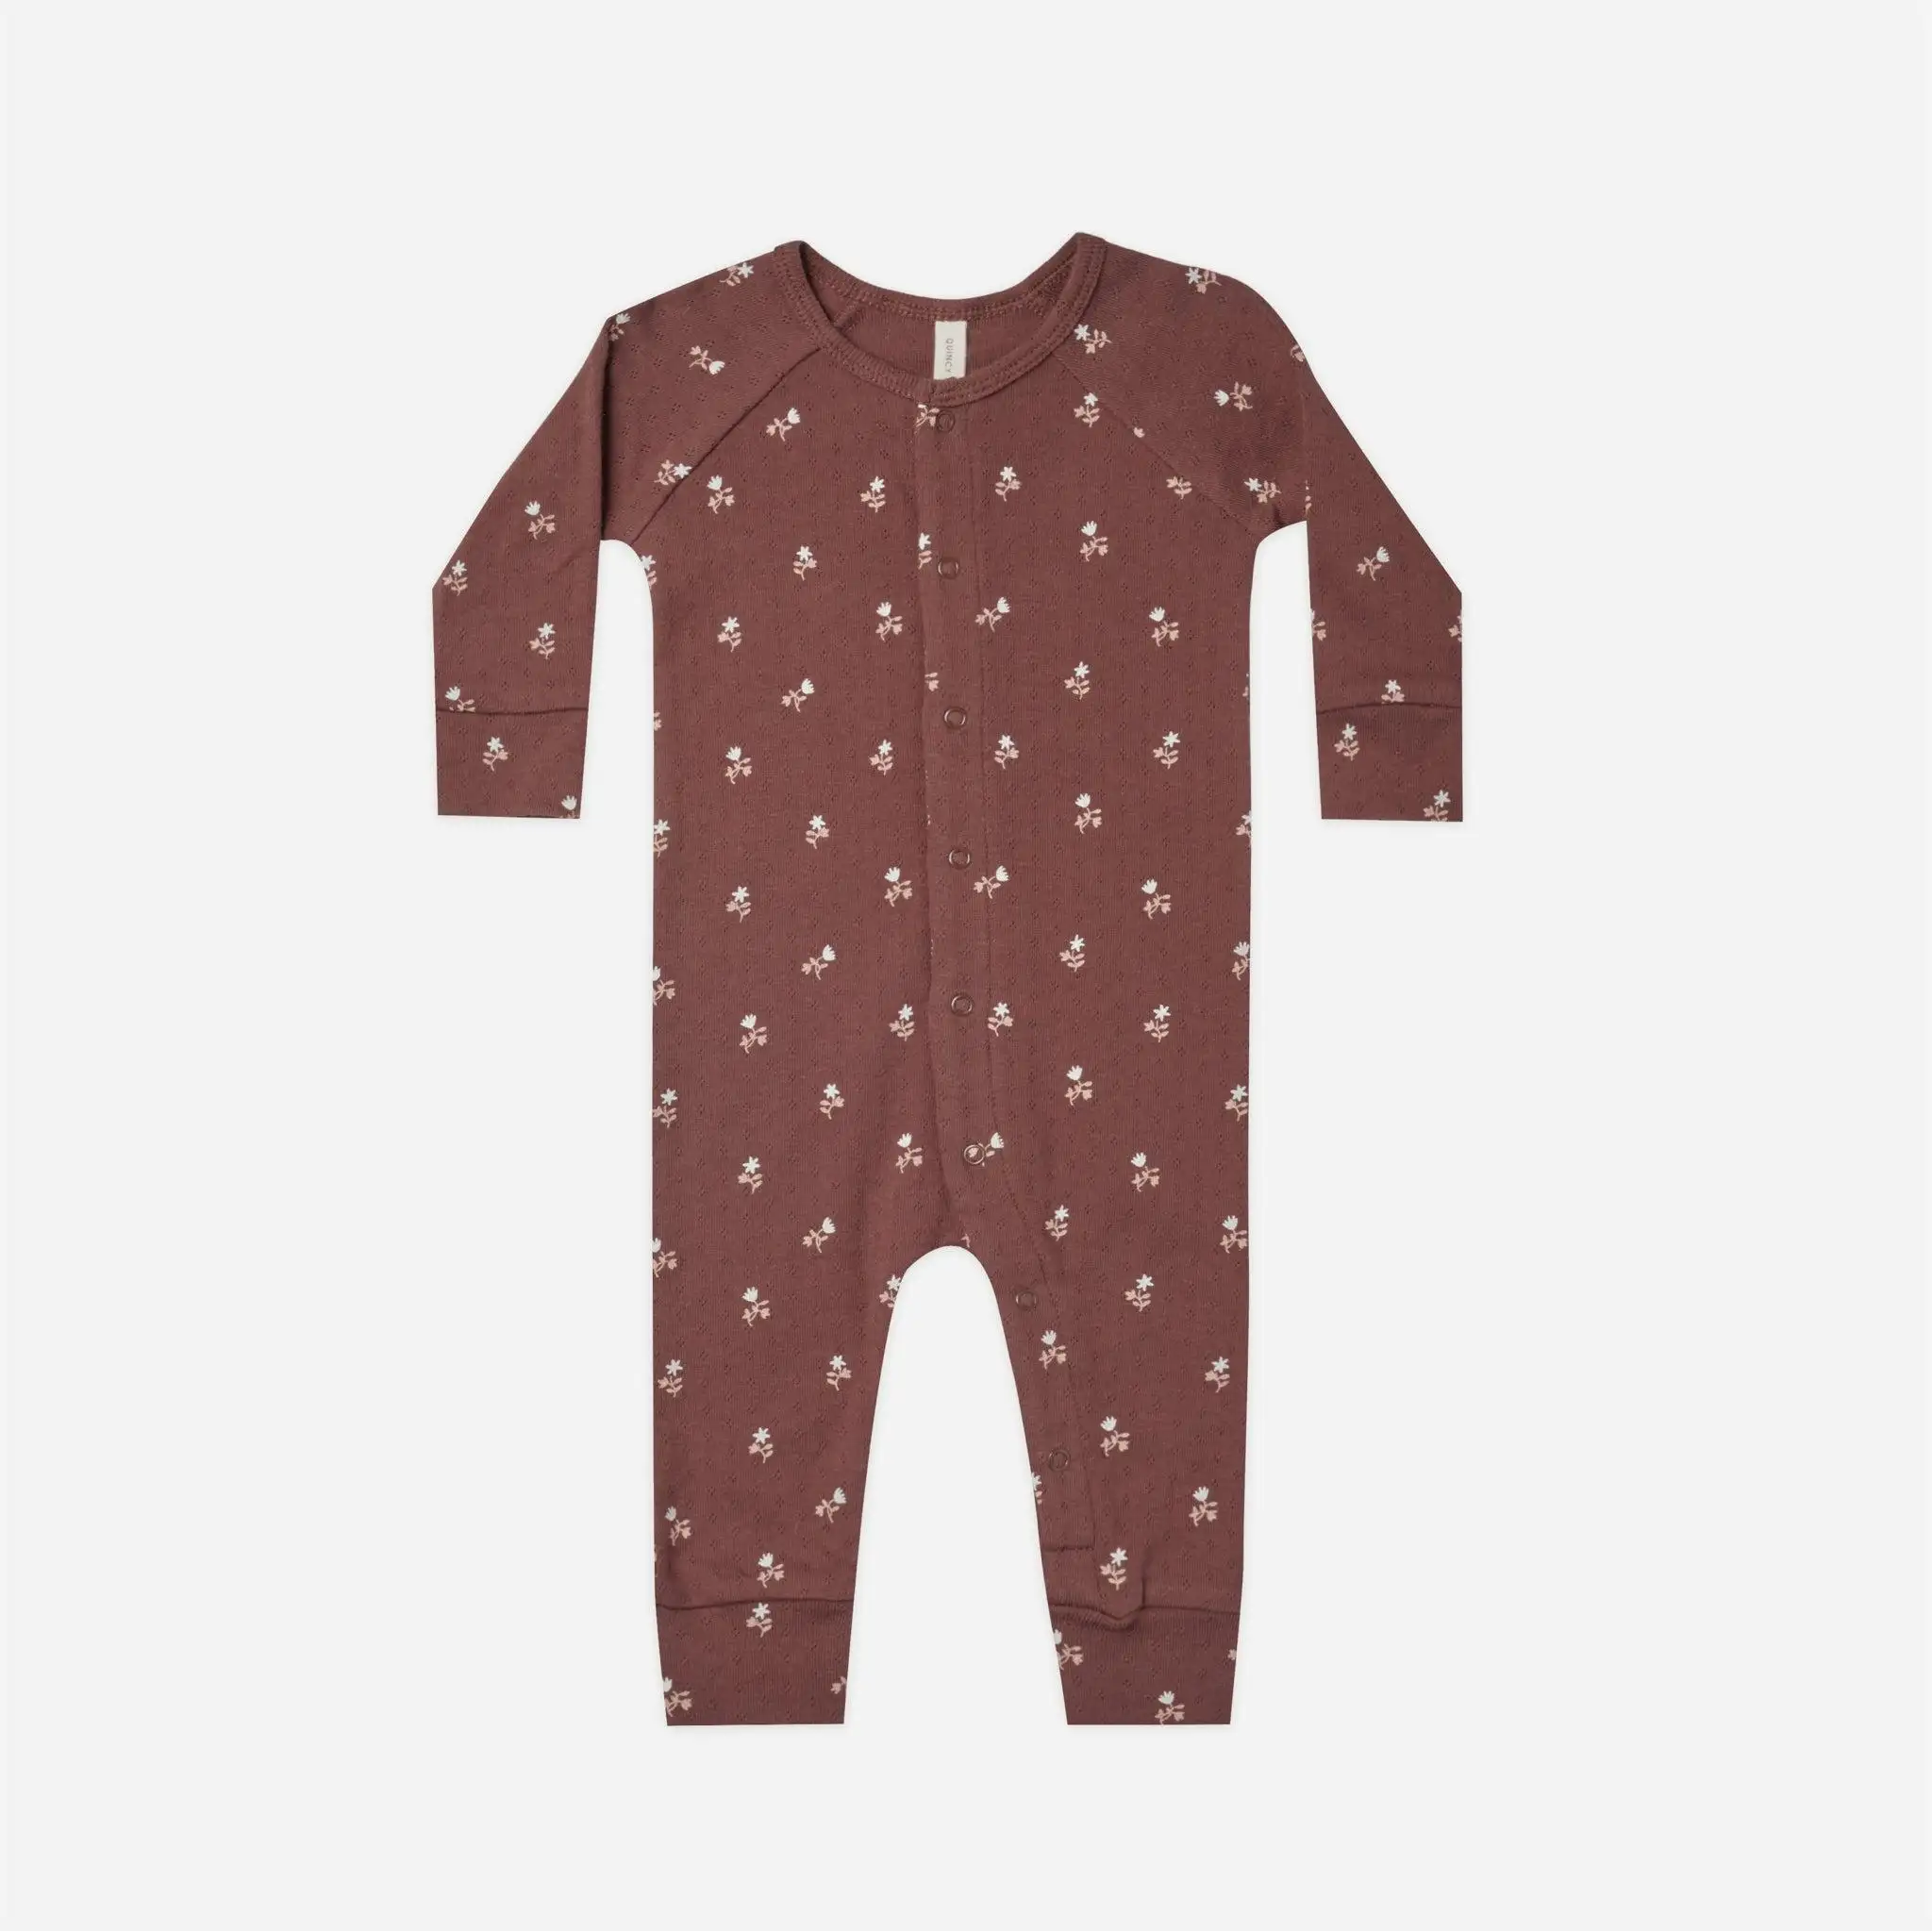 Benutzer definierte Bambus Rayon Spandex Baby Kleinkind Pyjamas Front Schlaf Spiel Sleeper Infant Baby Kleidung Jumps uit Stram pler